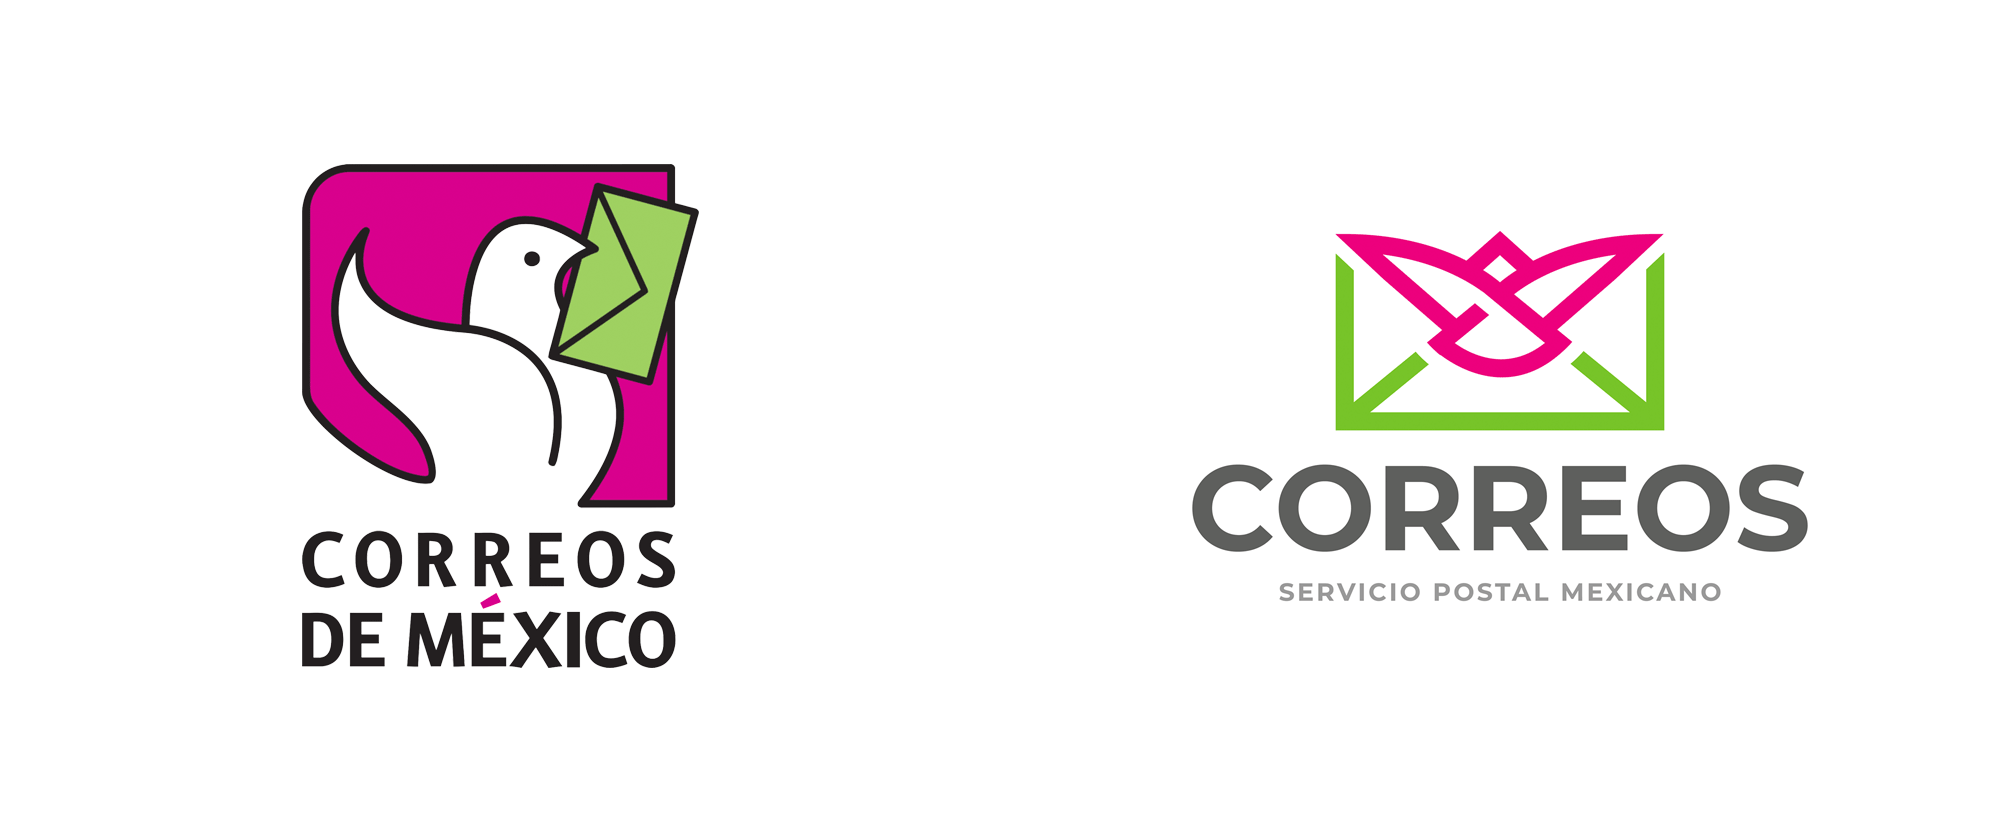 Este es el nuevo logotipo de Correos de México